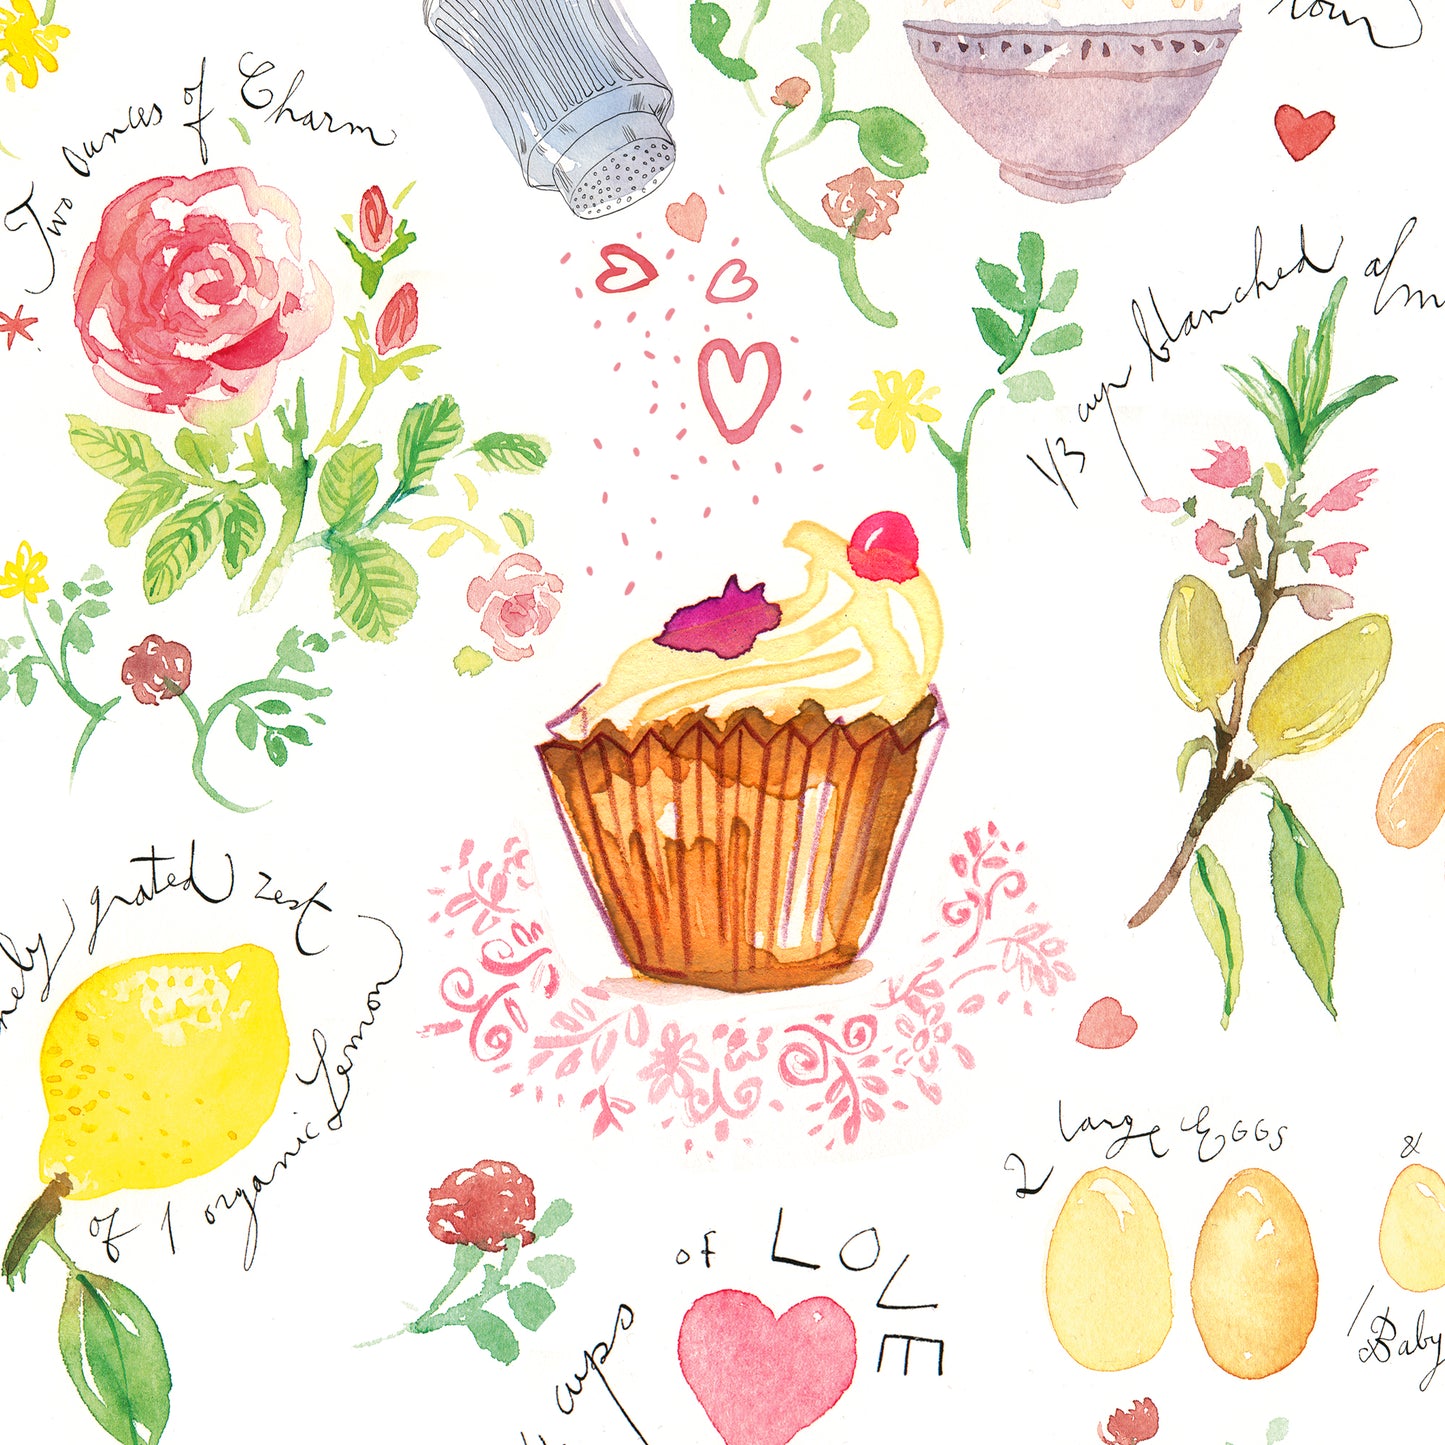 Love cupcake recipe